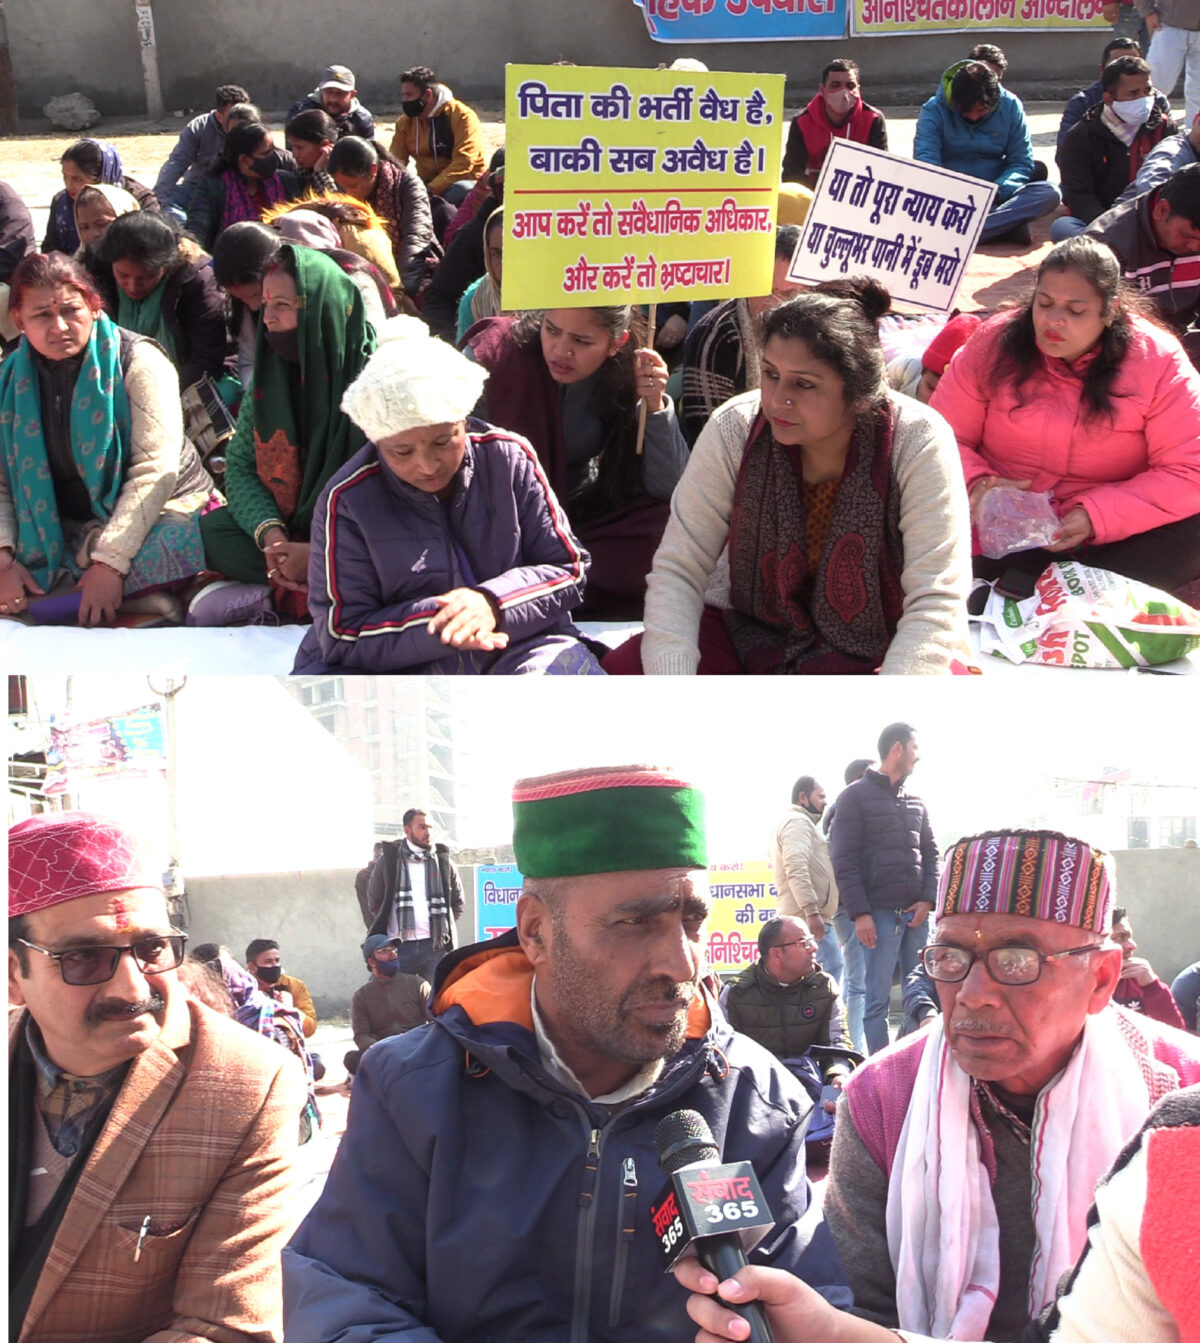 Uttarakhand : विधानसभा बर्खास्त कर्मचारियों पर मुकदमा दर्ज, लगे गंभीर आरोप